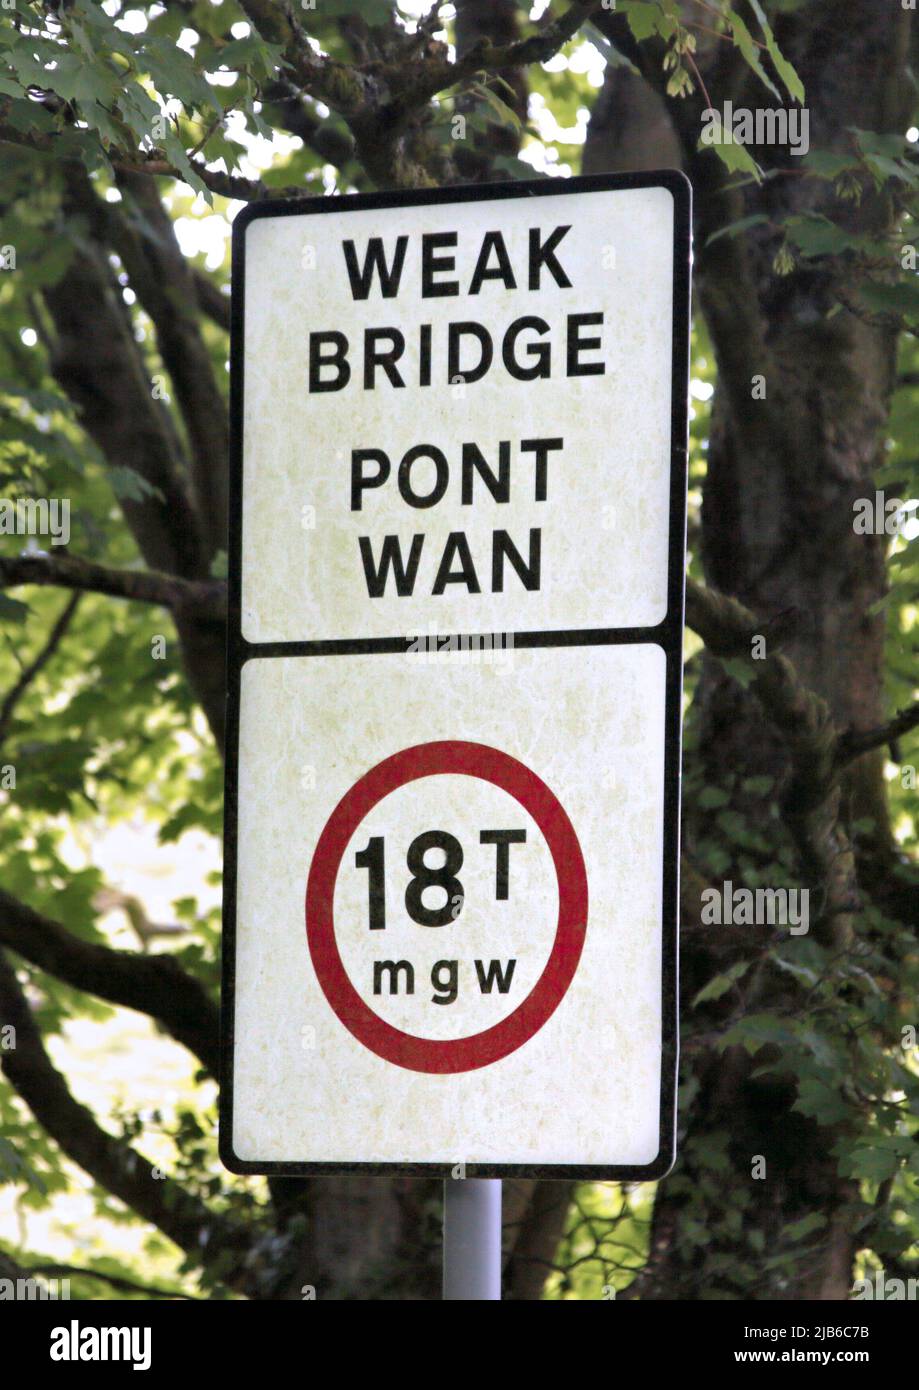 Señal de carretera que representa el Puente débil/Pont Wan, cerca de Coedpoeth, Gales Foto de stock